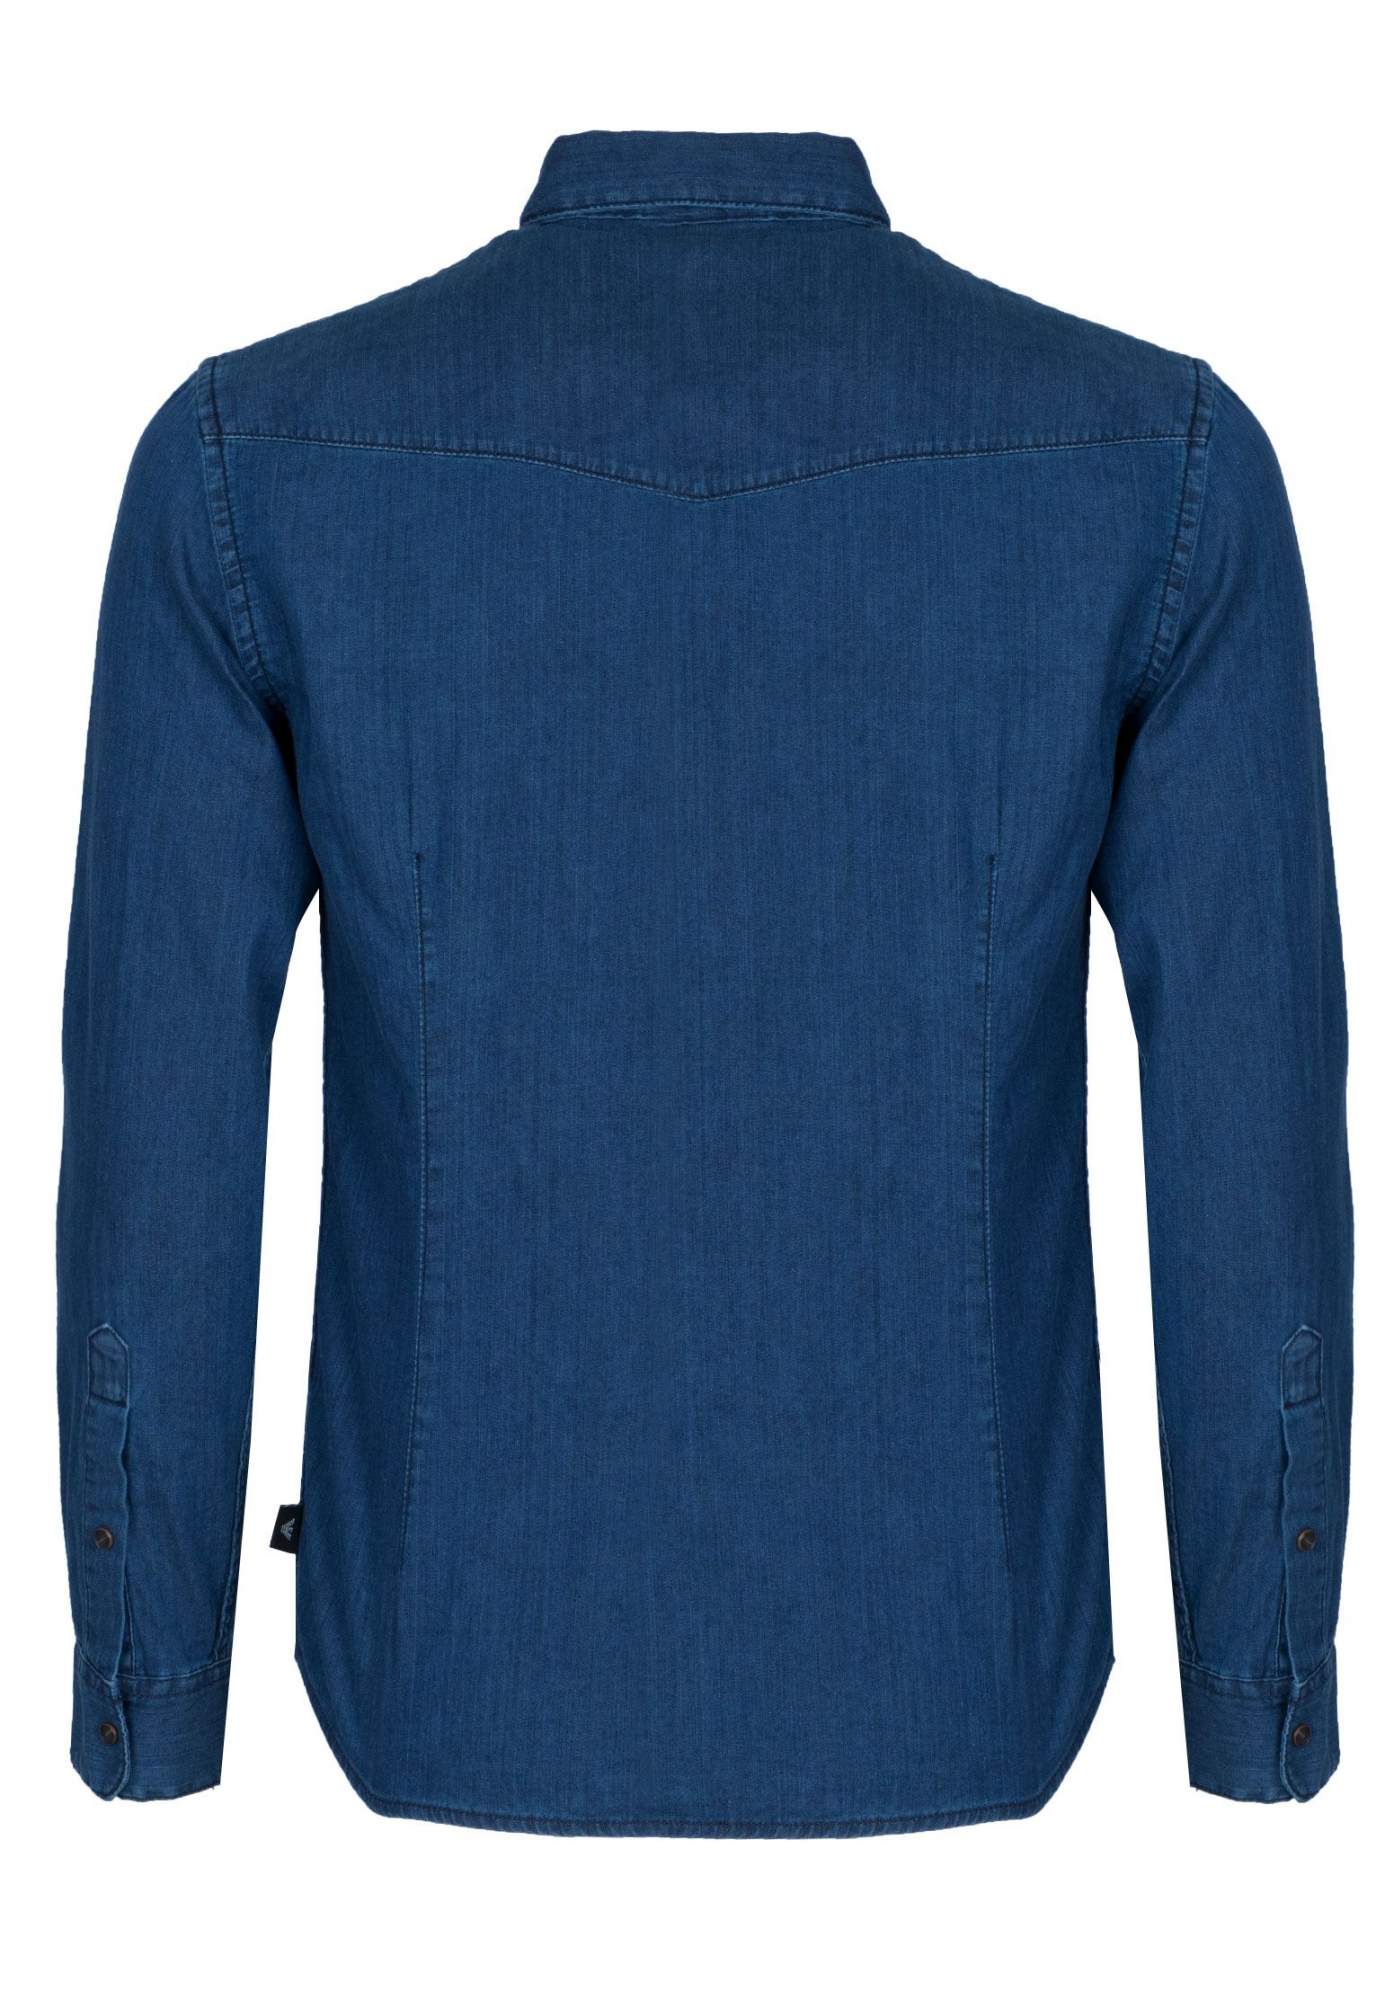 Джинсовая рубашка мужская Emporio Armani 99154 синяя M